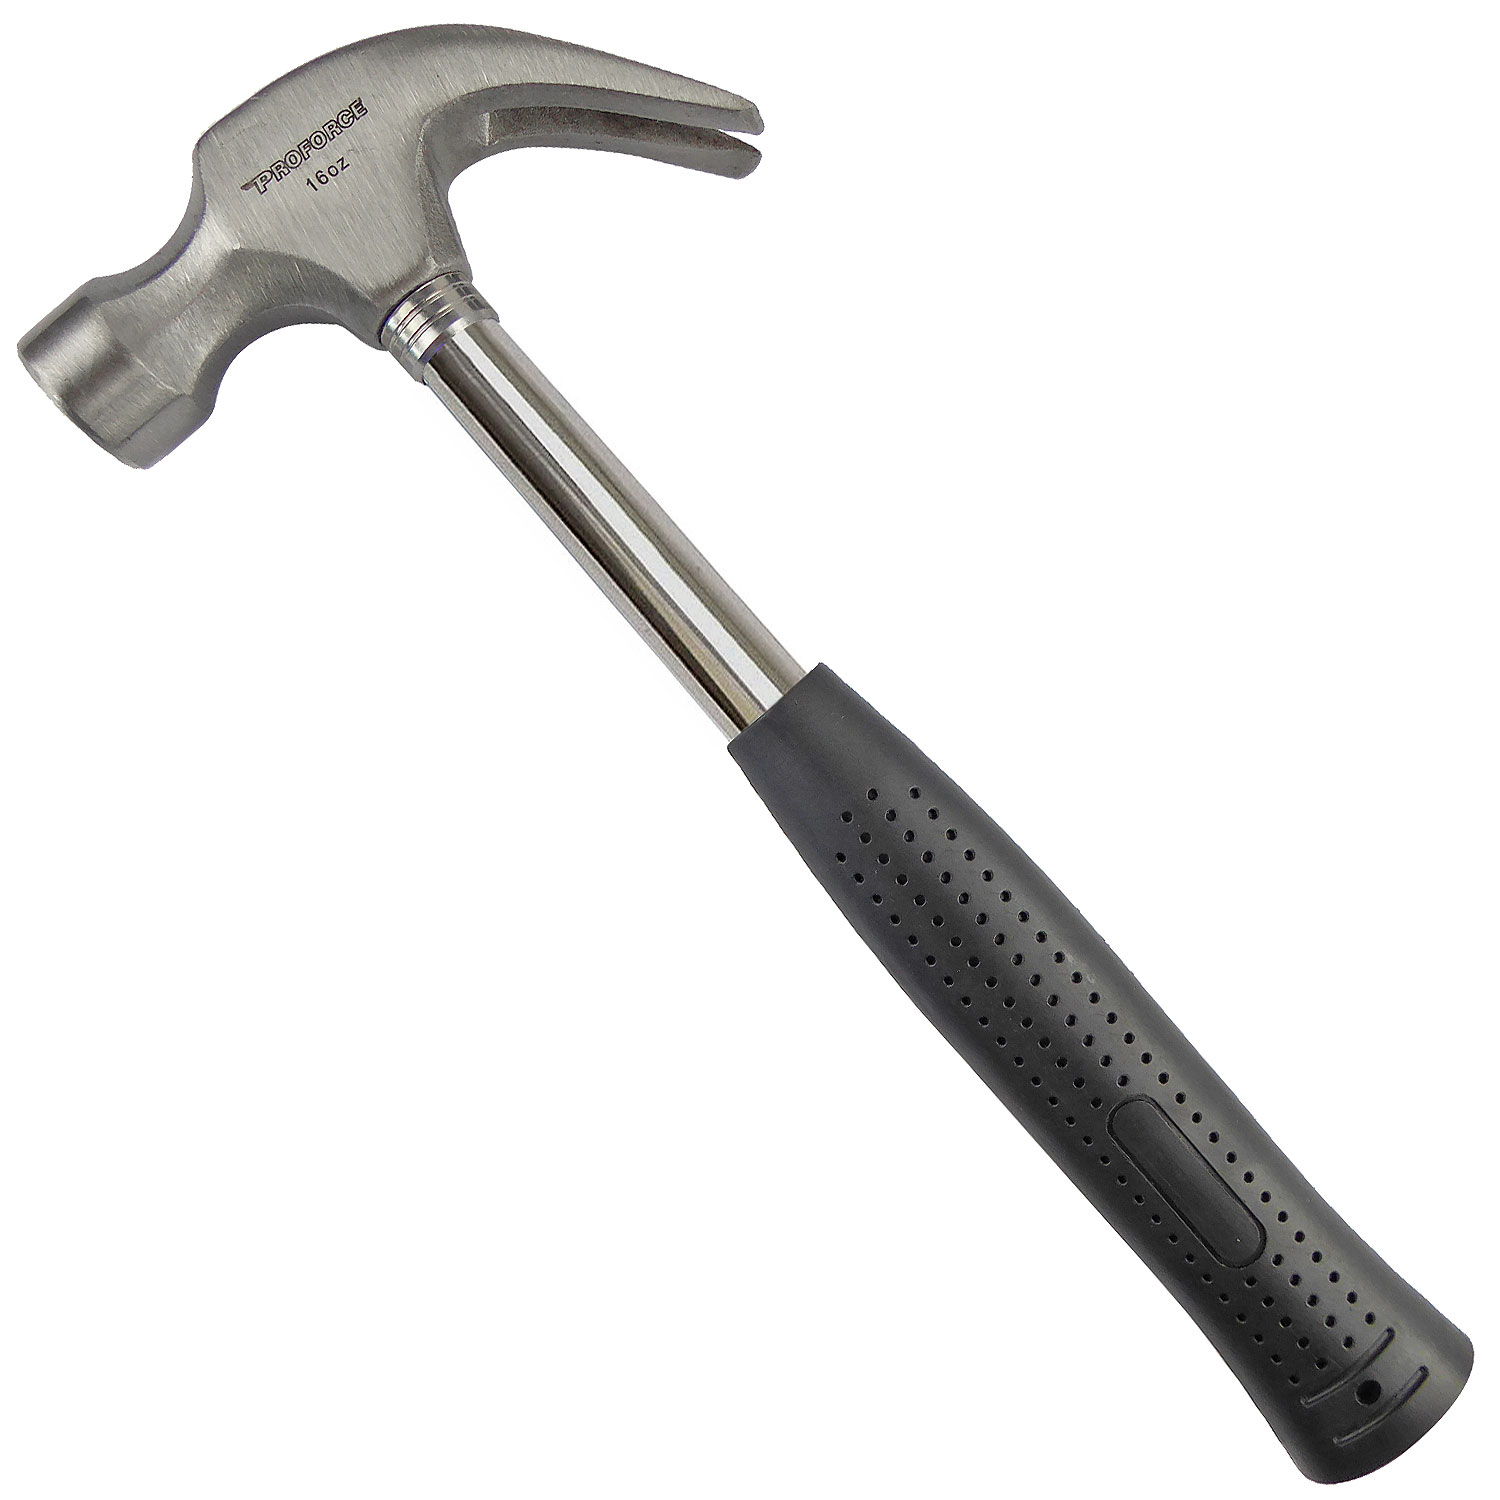 16oz Tubular Steel Claw Hammer